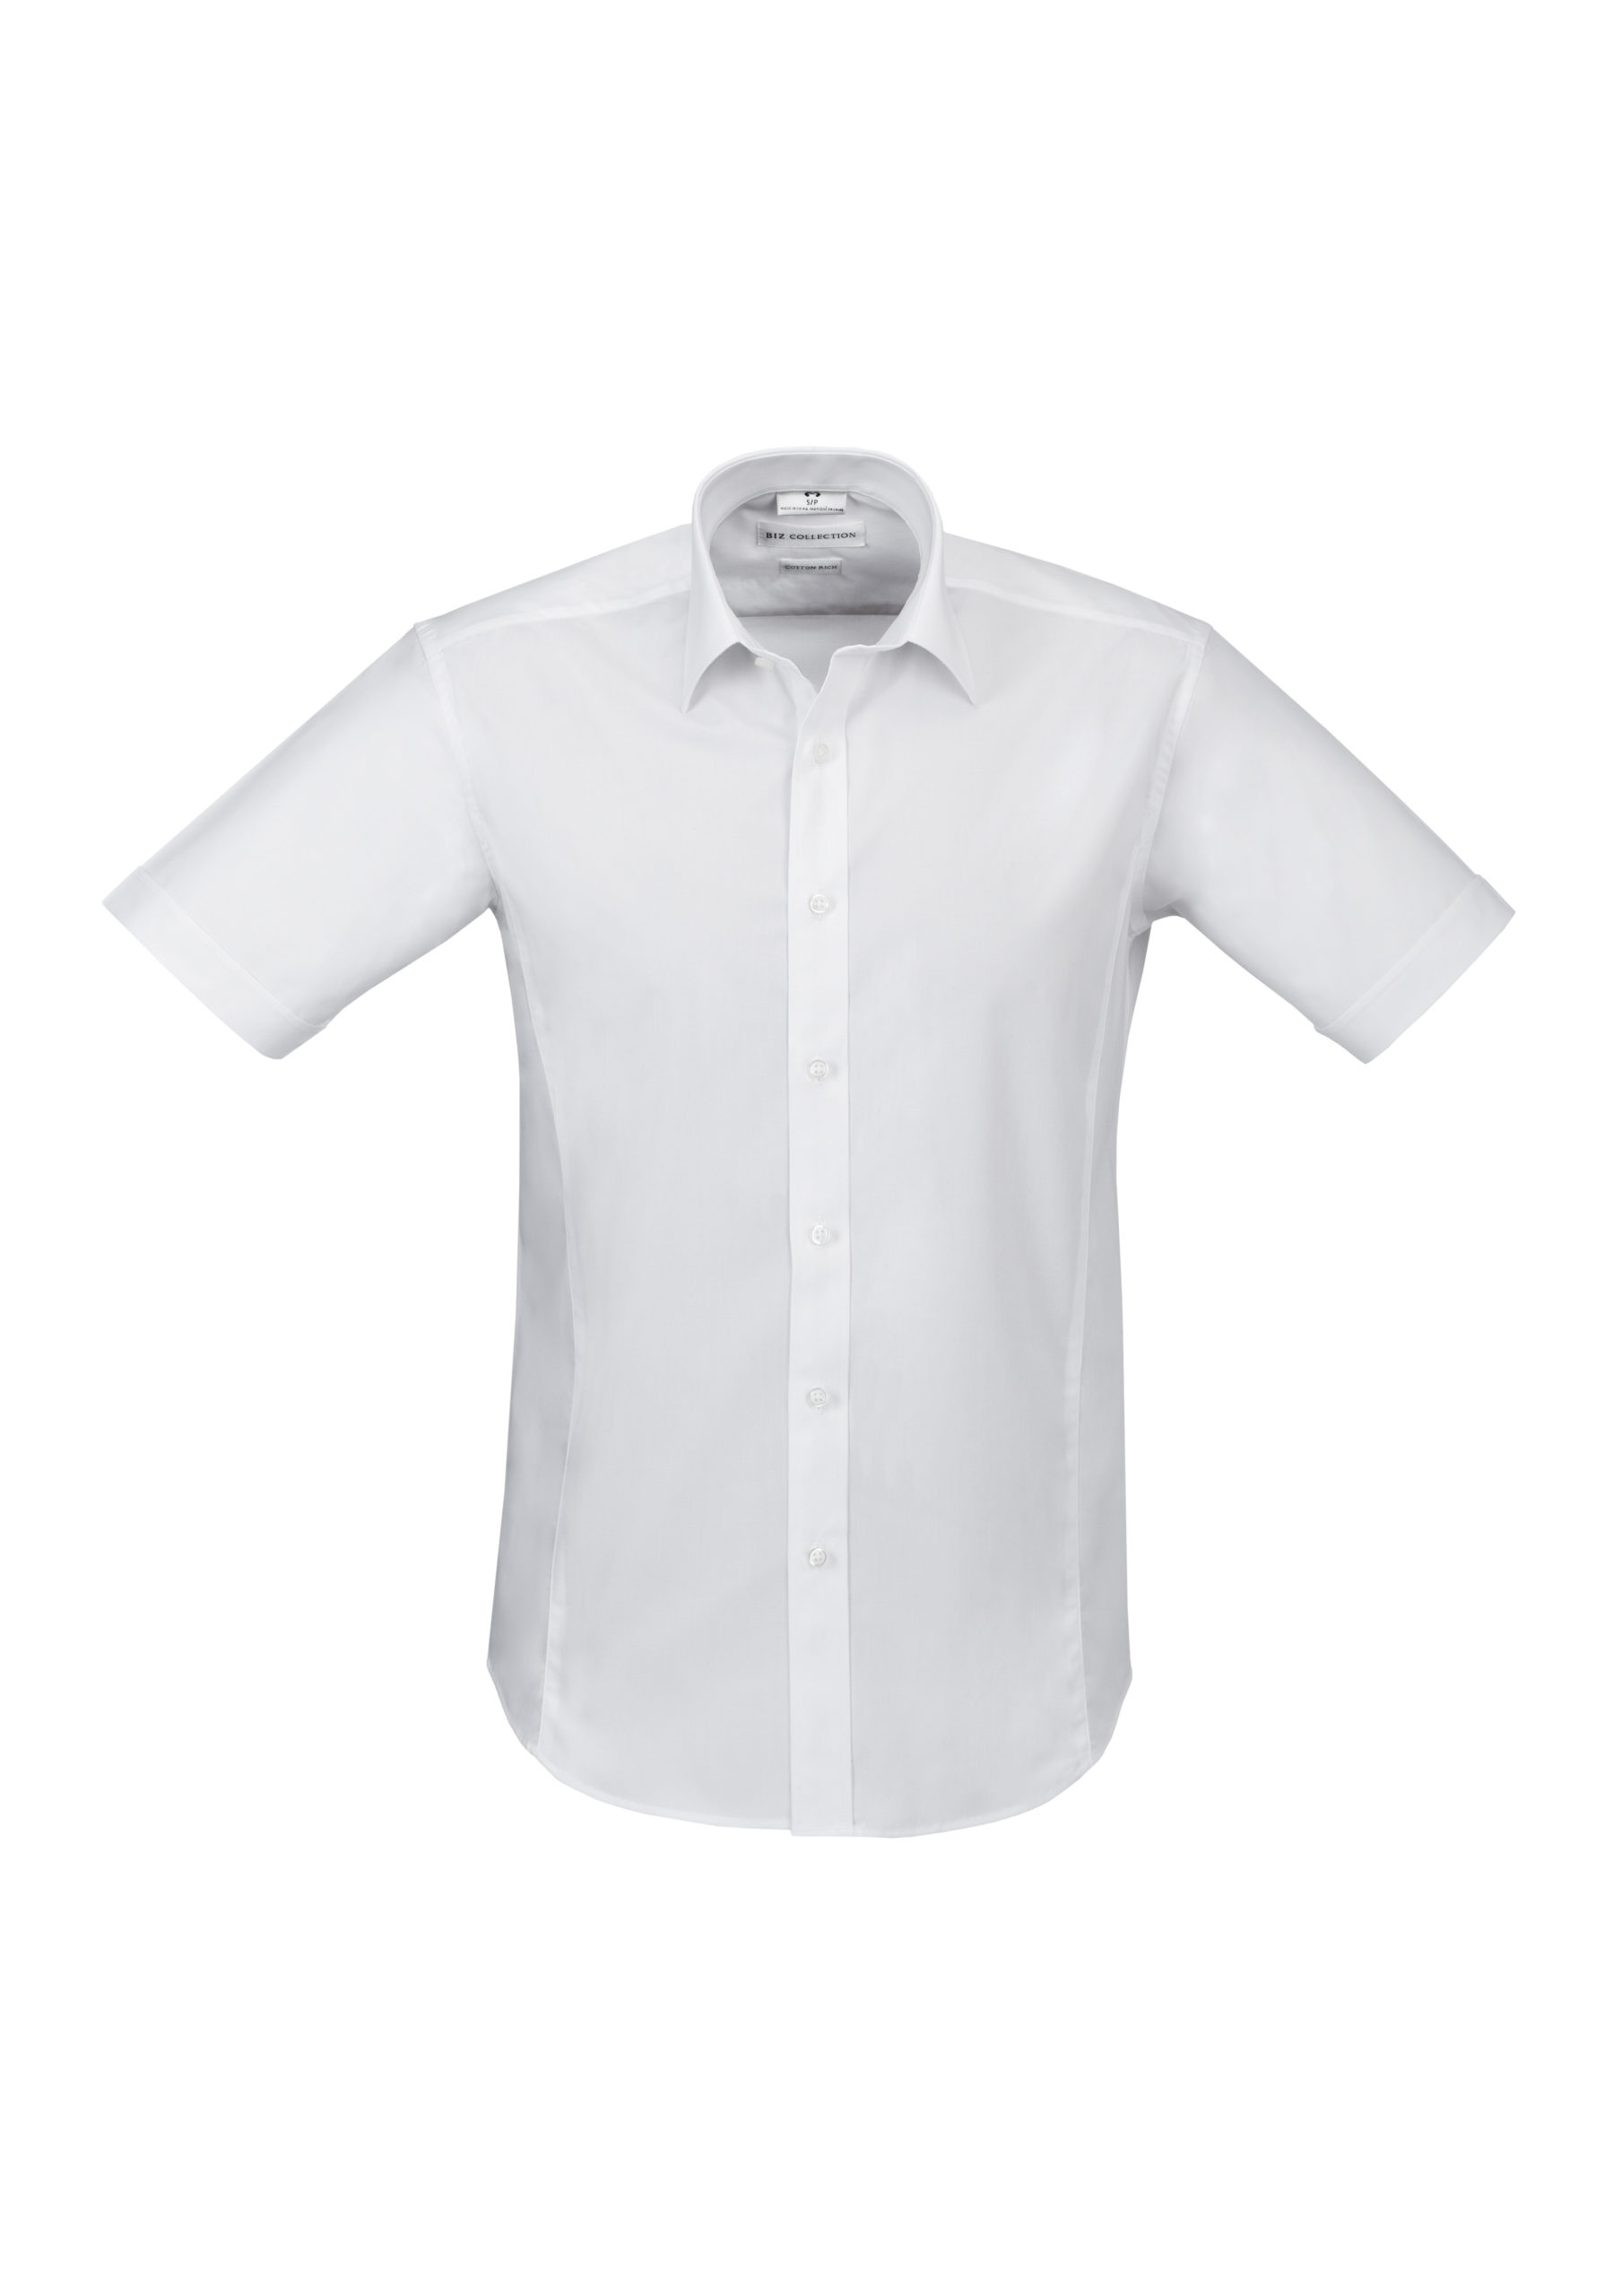 Mens Berlin Short Sleeve Shirt » Australian Merch Co